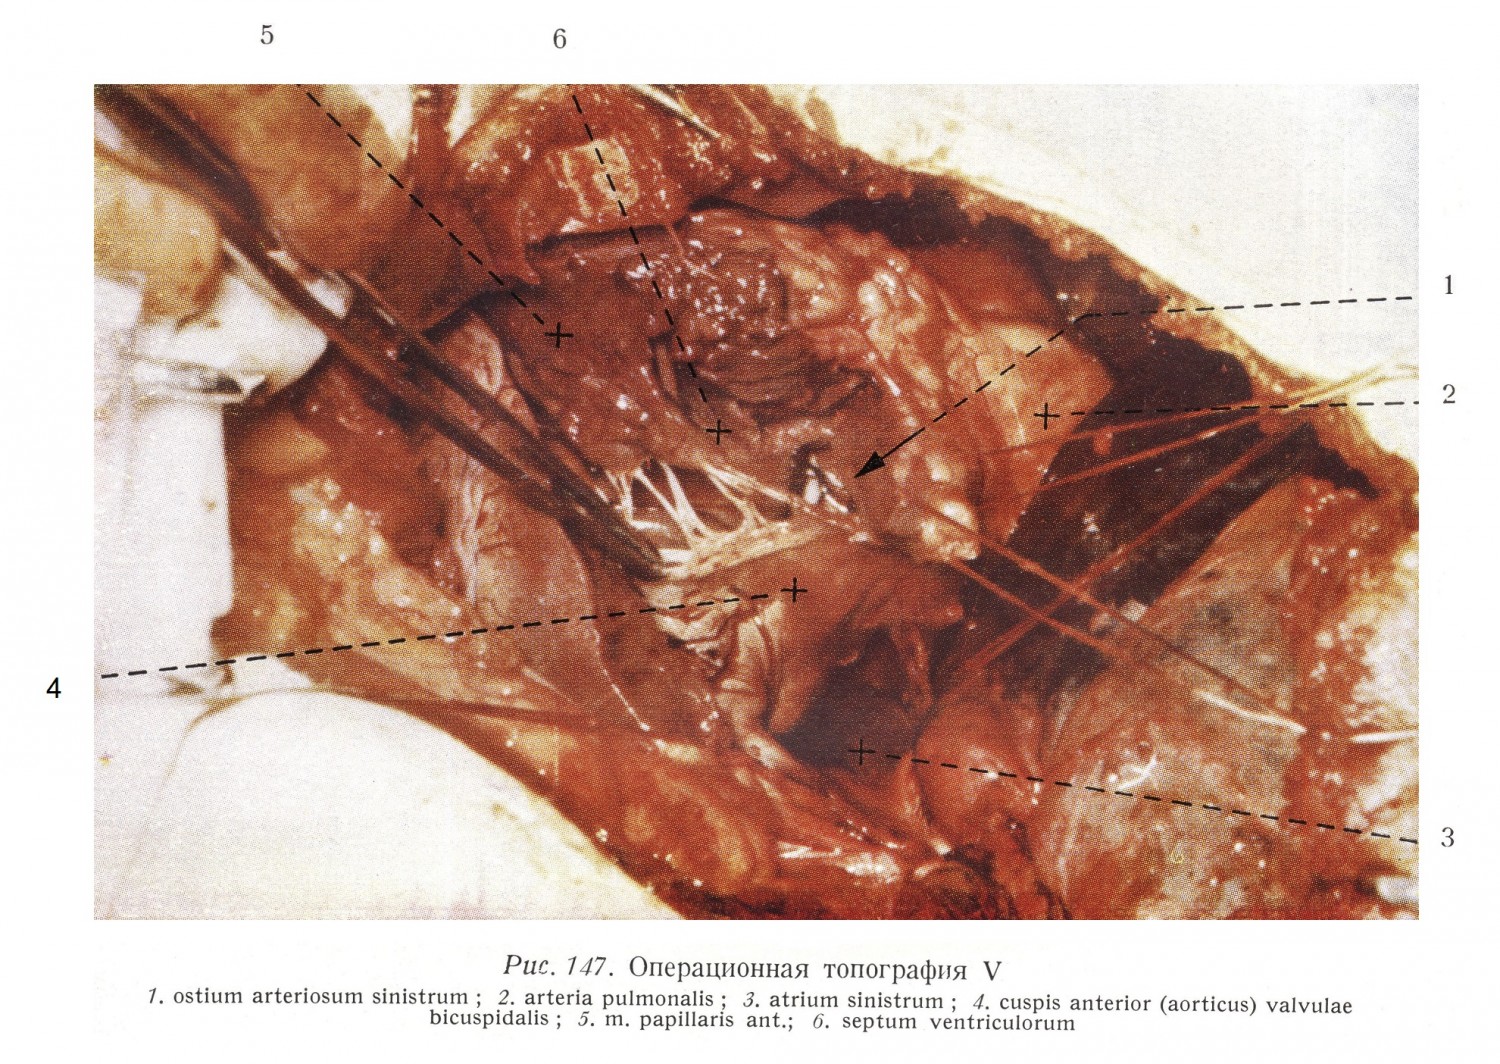 Передний парус. Парус лежит на границе кровотока, идущего из левого предсердия в левый желудочек, и кровотока, идущего оттуда по направлению аорты